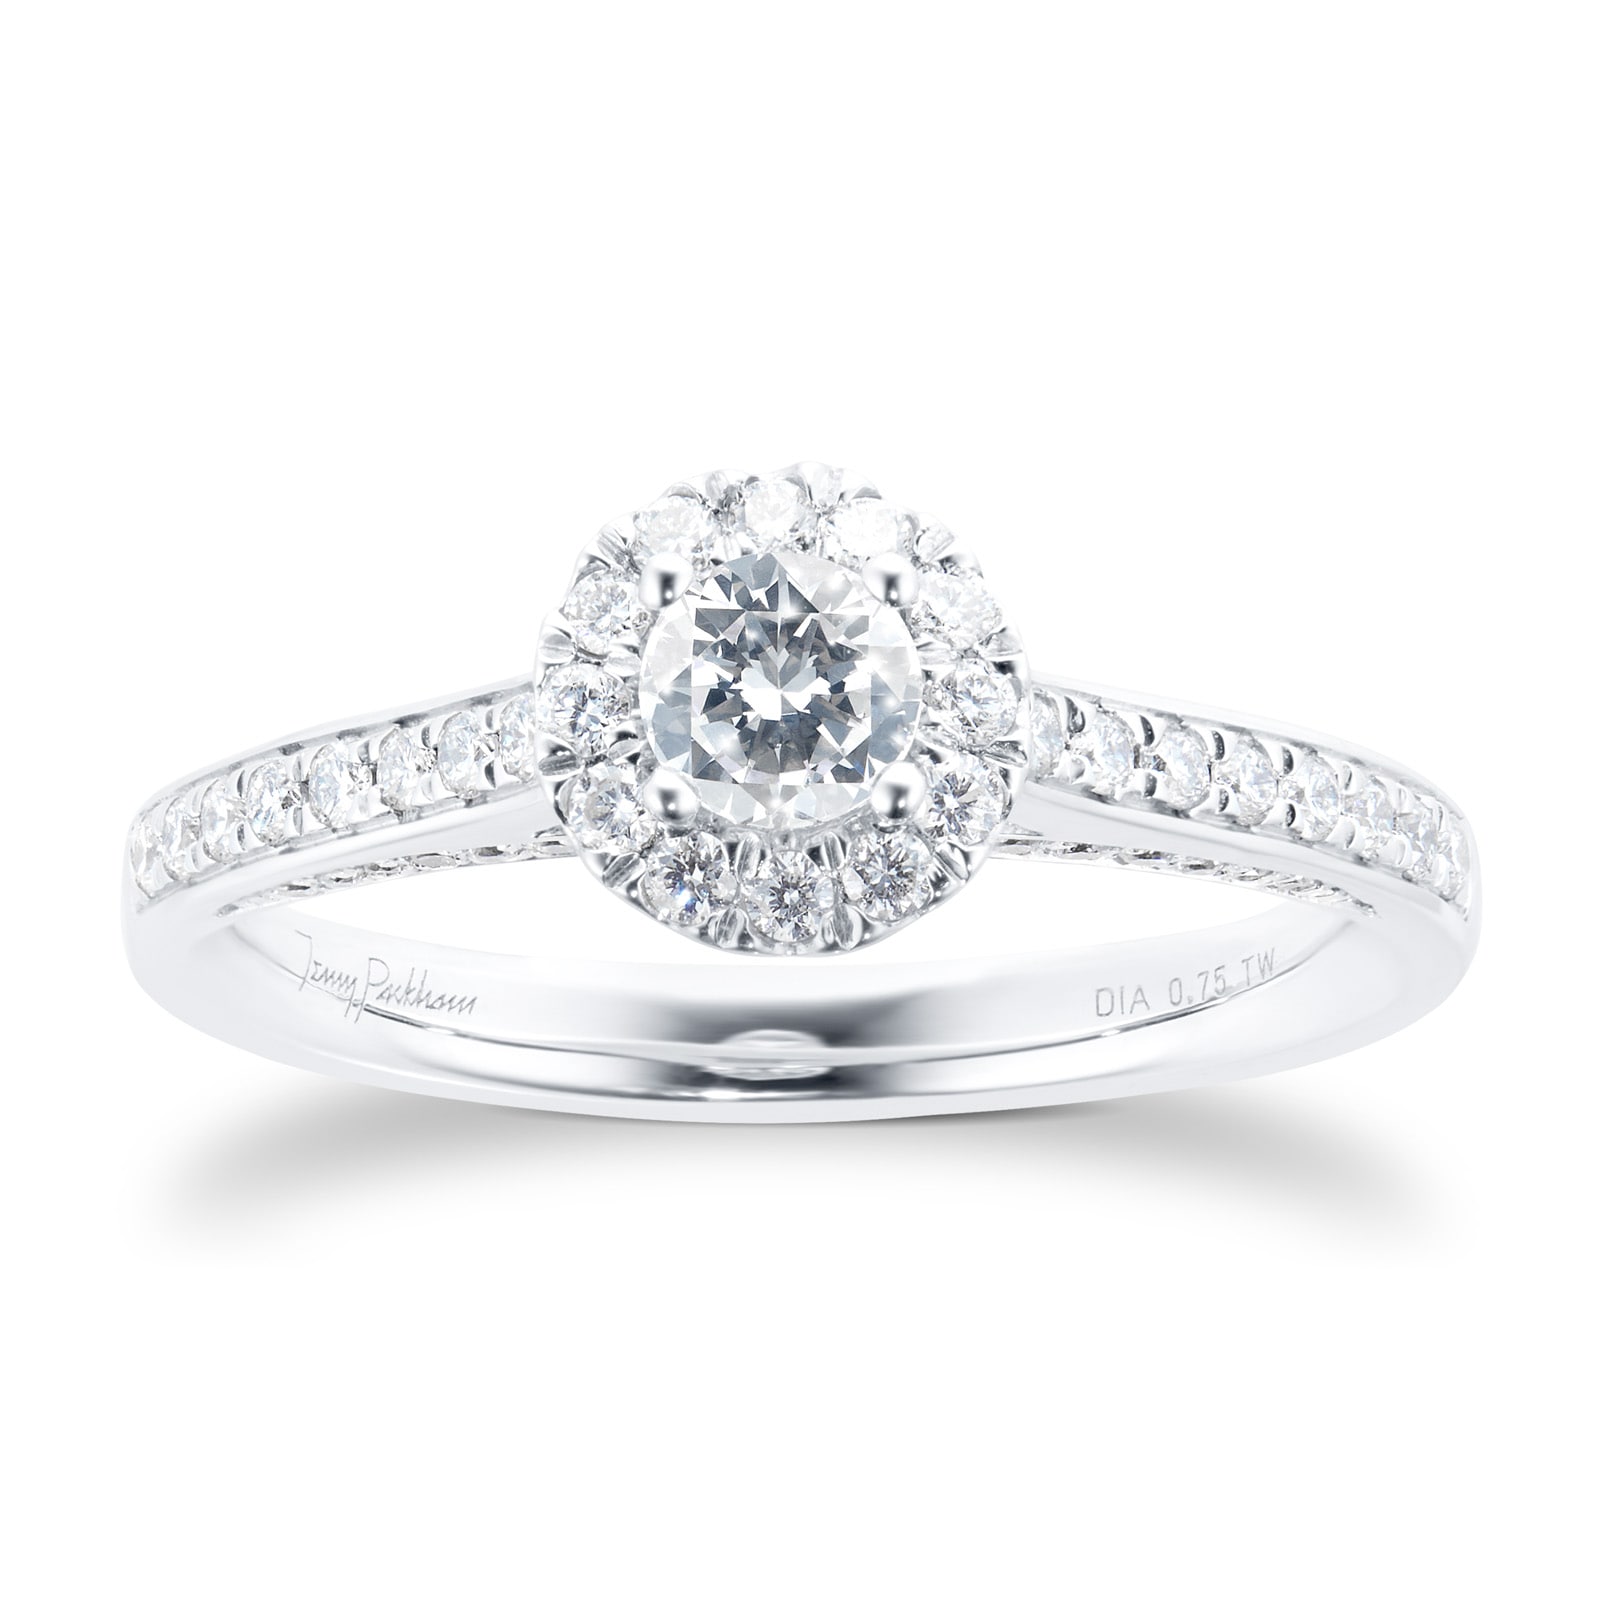 Platinum 0.75cttw Brilliant Cut Halo Diamond Ring - Ring Size Q